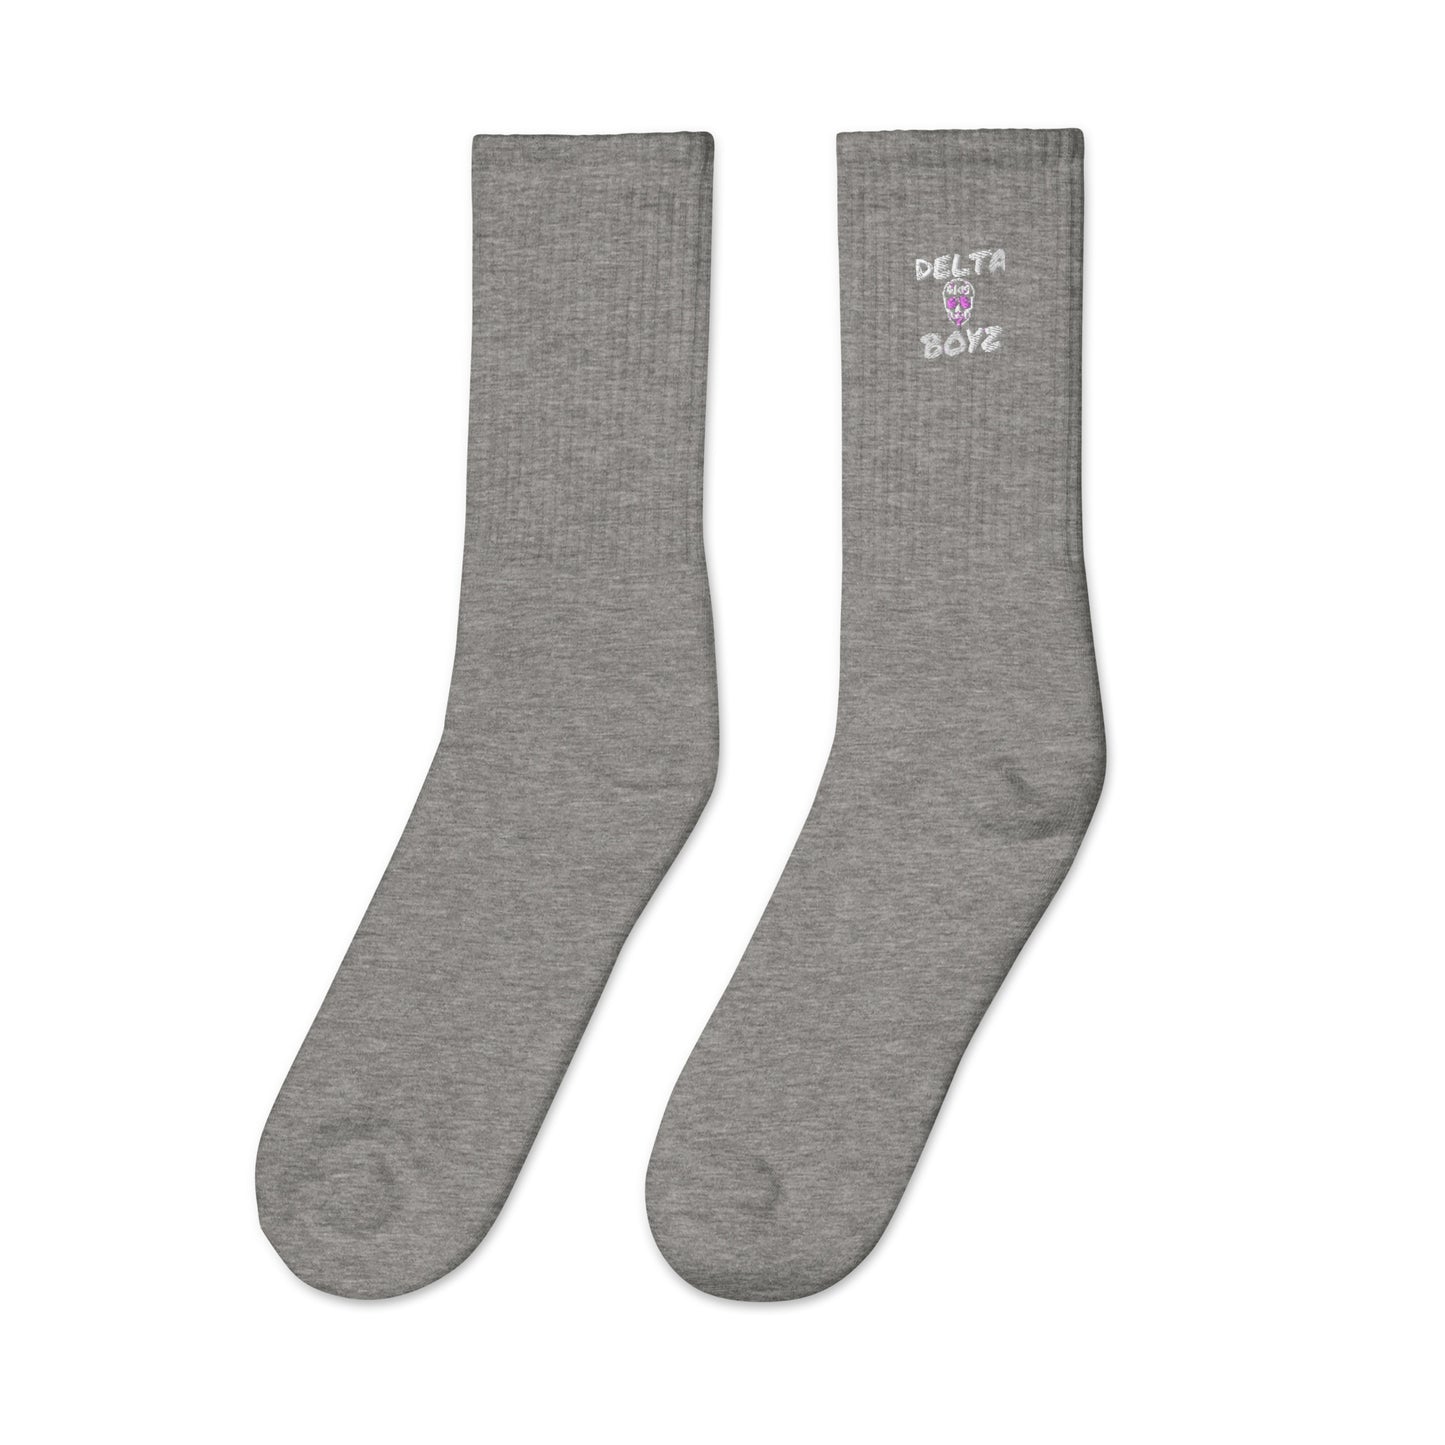 Delta Boyz Embroidered socks